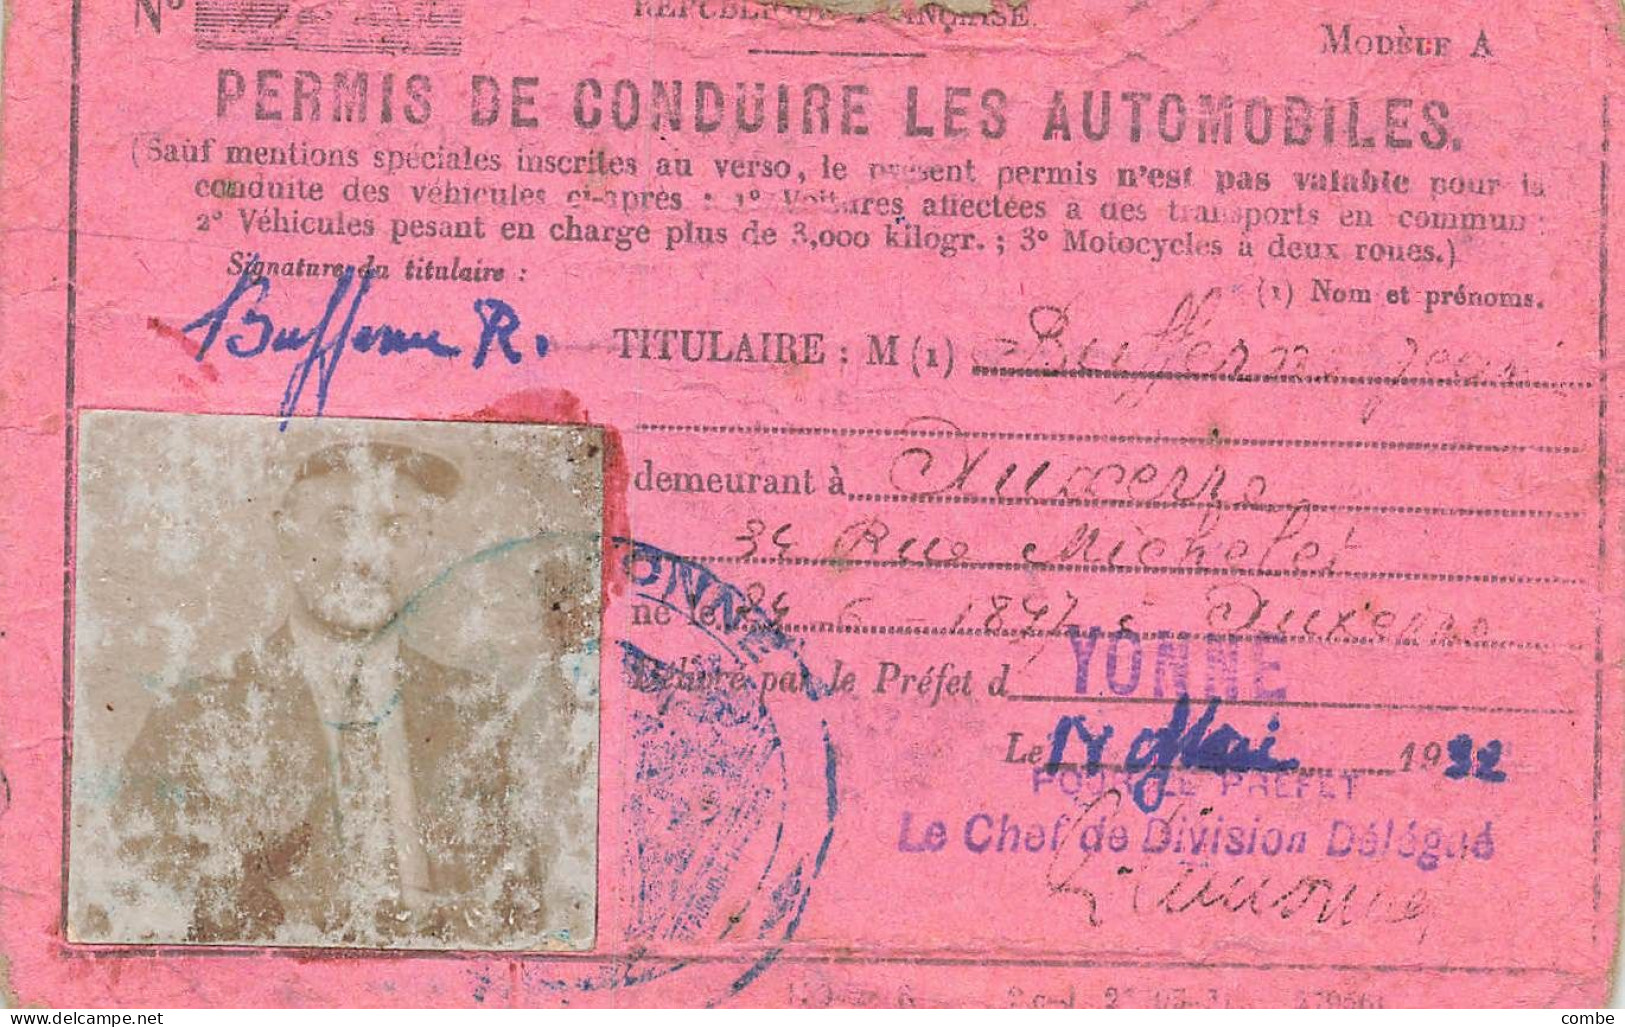 PERMIS DE CONDUIRE LES AUTOMOBILES.  YONNE. 1932 - Documents Historiques